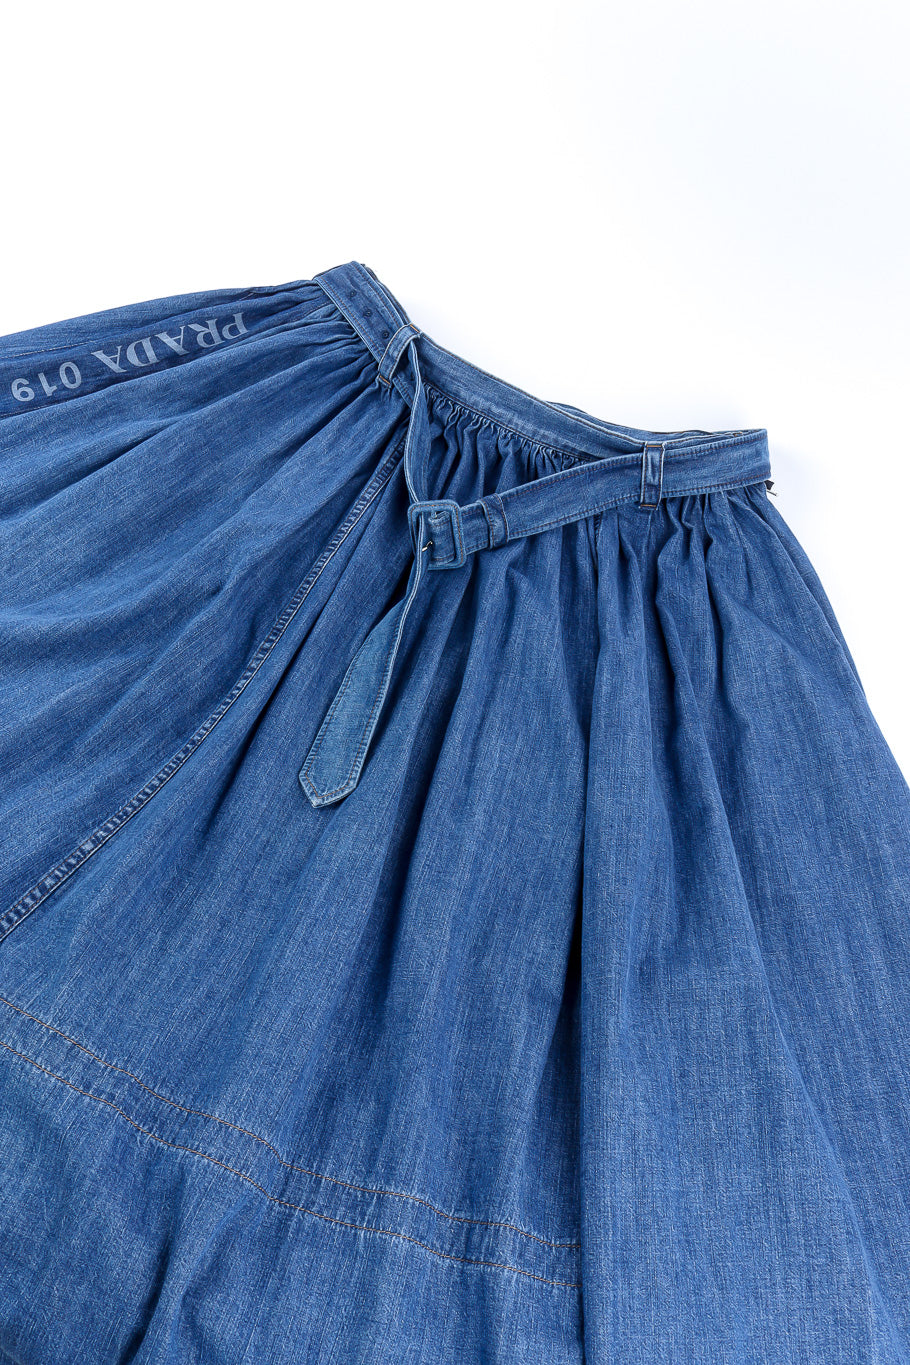 Prada denim peasant skirt flat-lay product shot @recessla